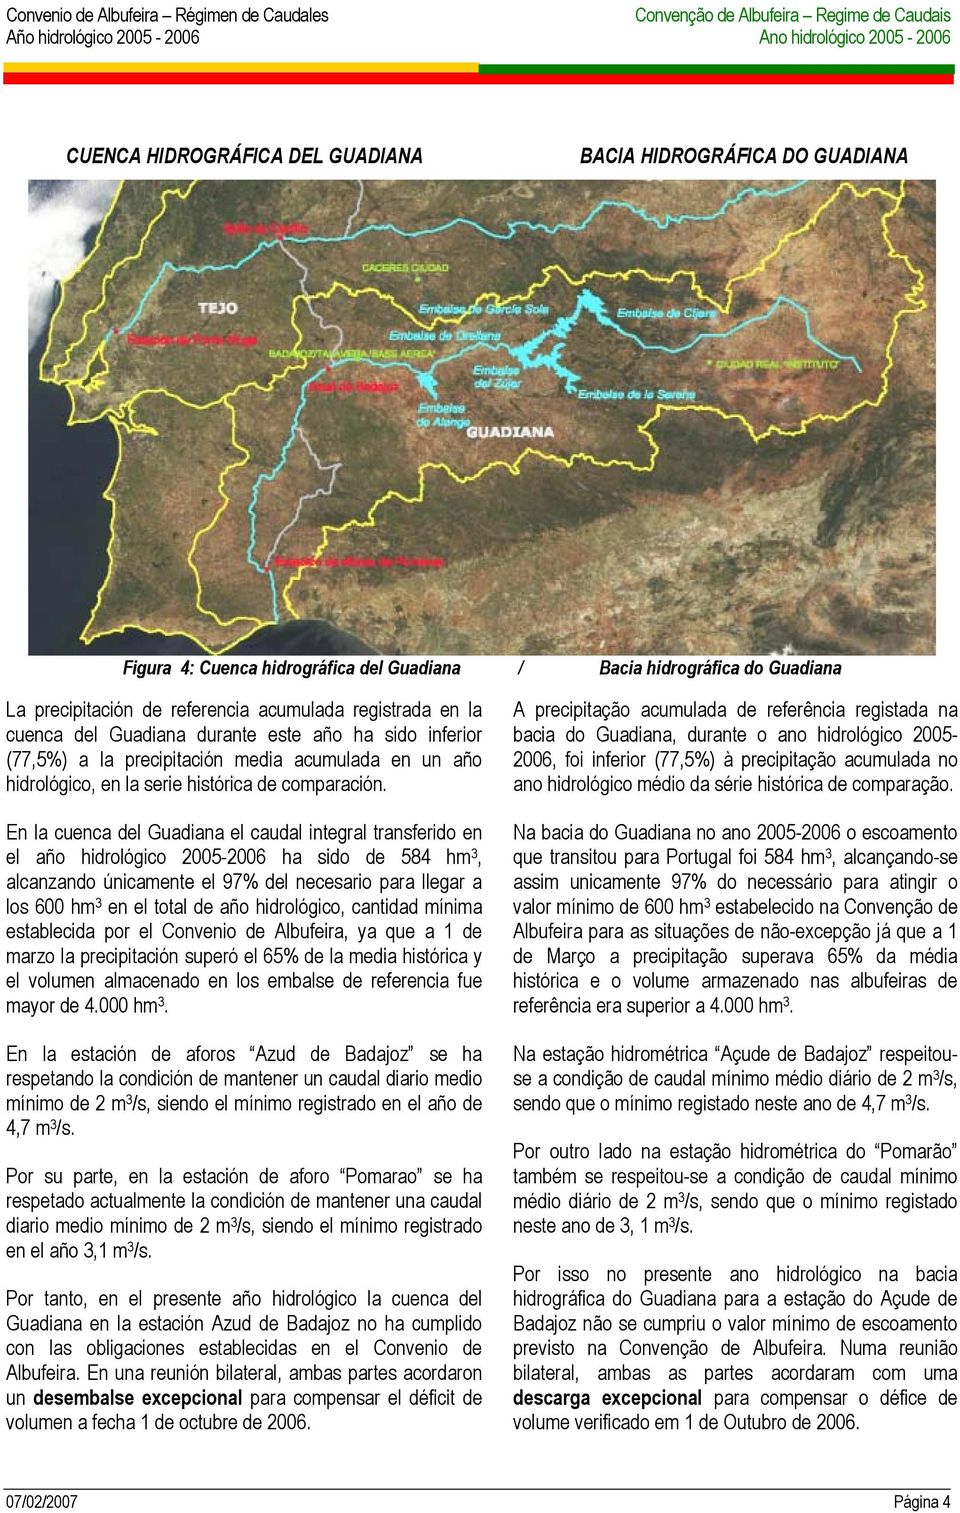 En la cuenca del Guadiana el caudal integral transferido en el año hidrológico 2005-2006 ha sido de 584 hm 3, alcanzando únicamente el 97% del necesario para llegar a los 600 hm 3 en el total de año